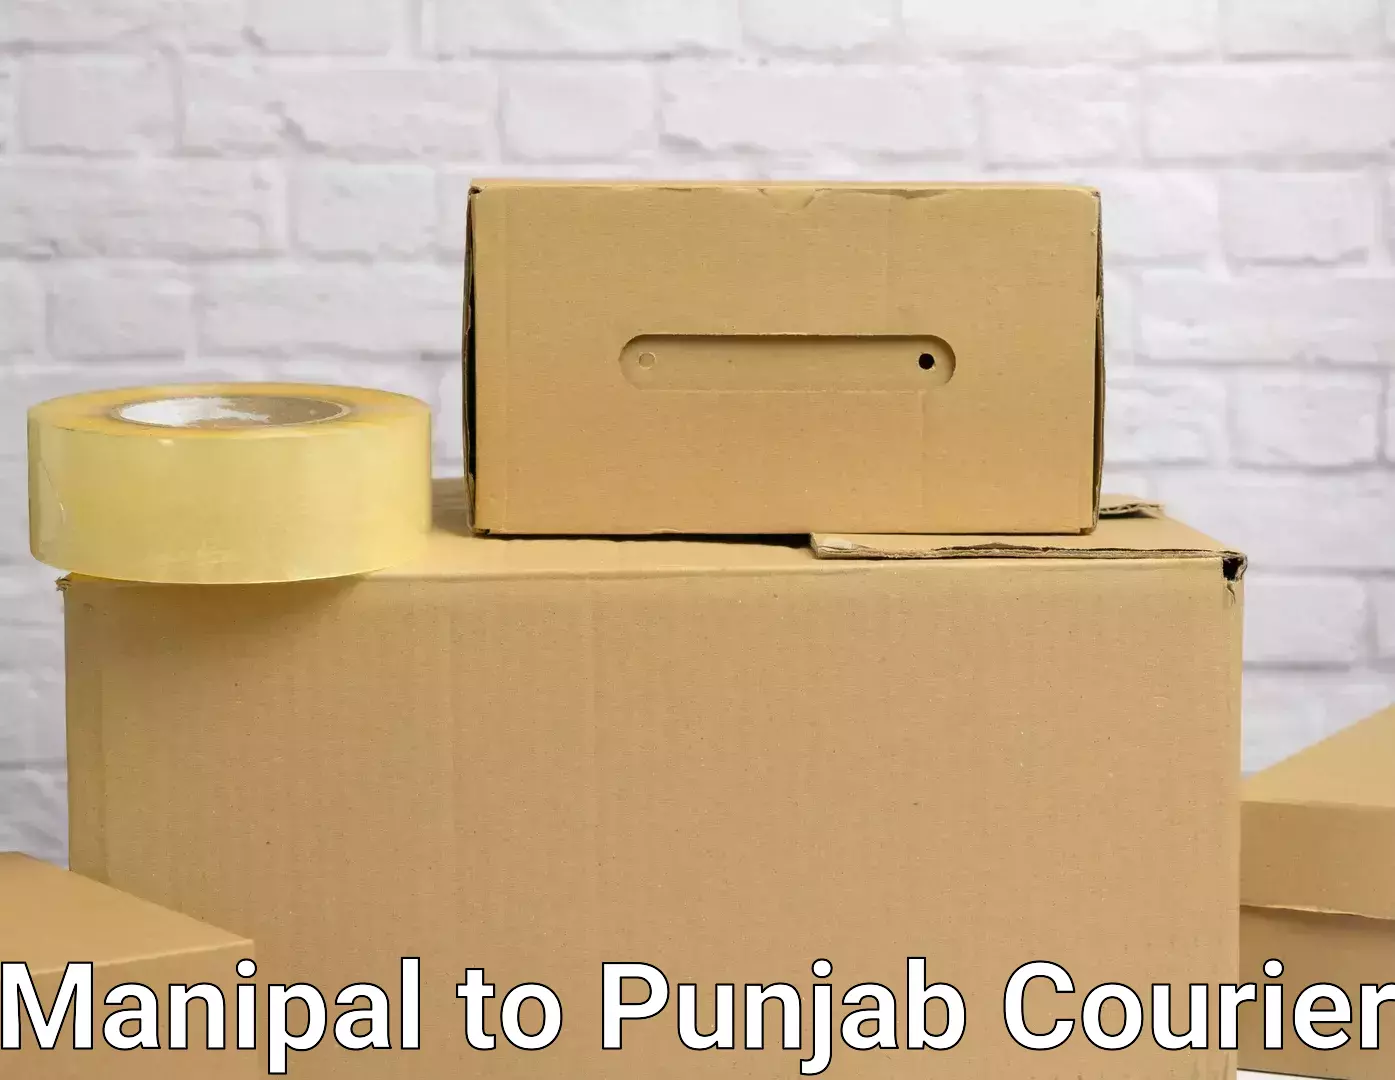 Seamless moving process Manipal to Punjab